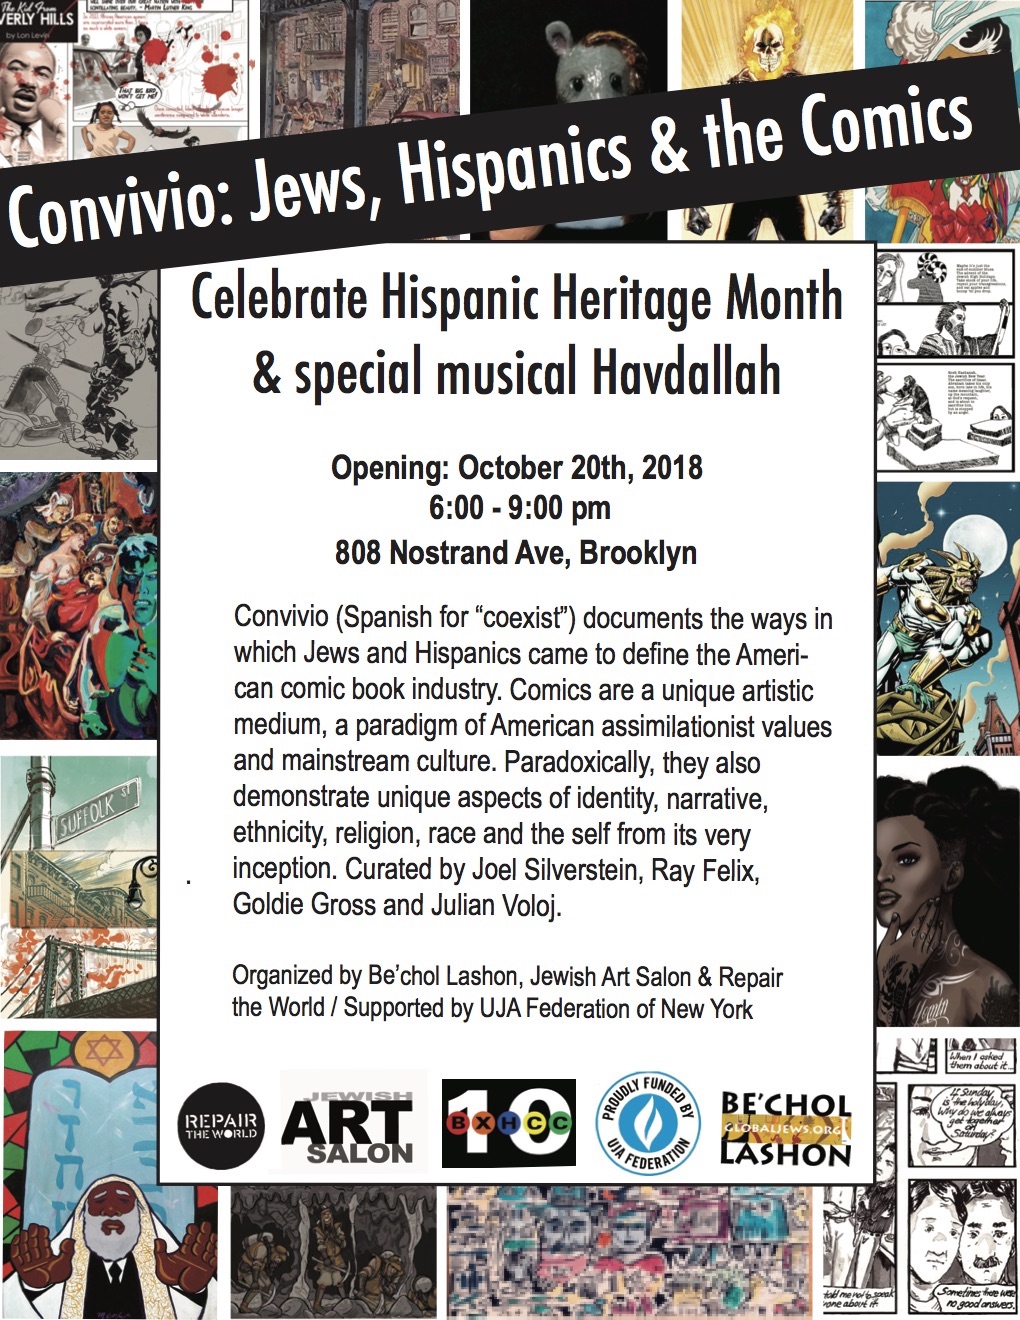 Convivio: Jews, Hispanics & the Comics